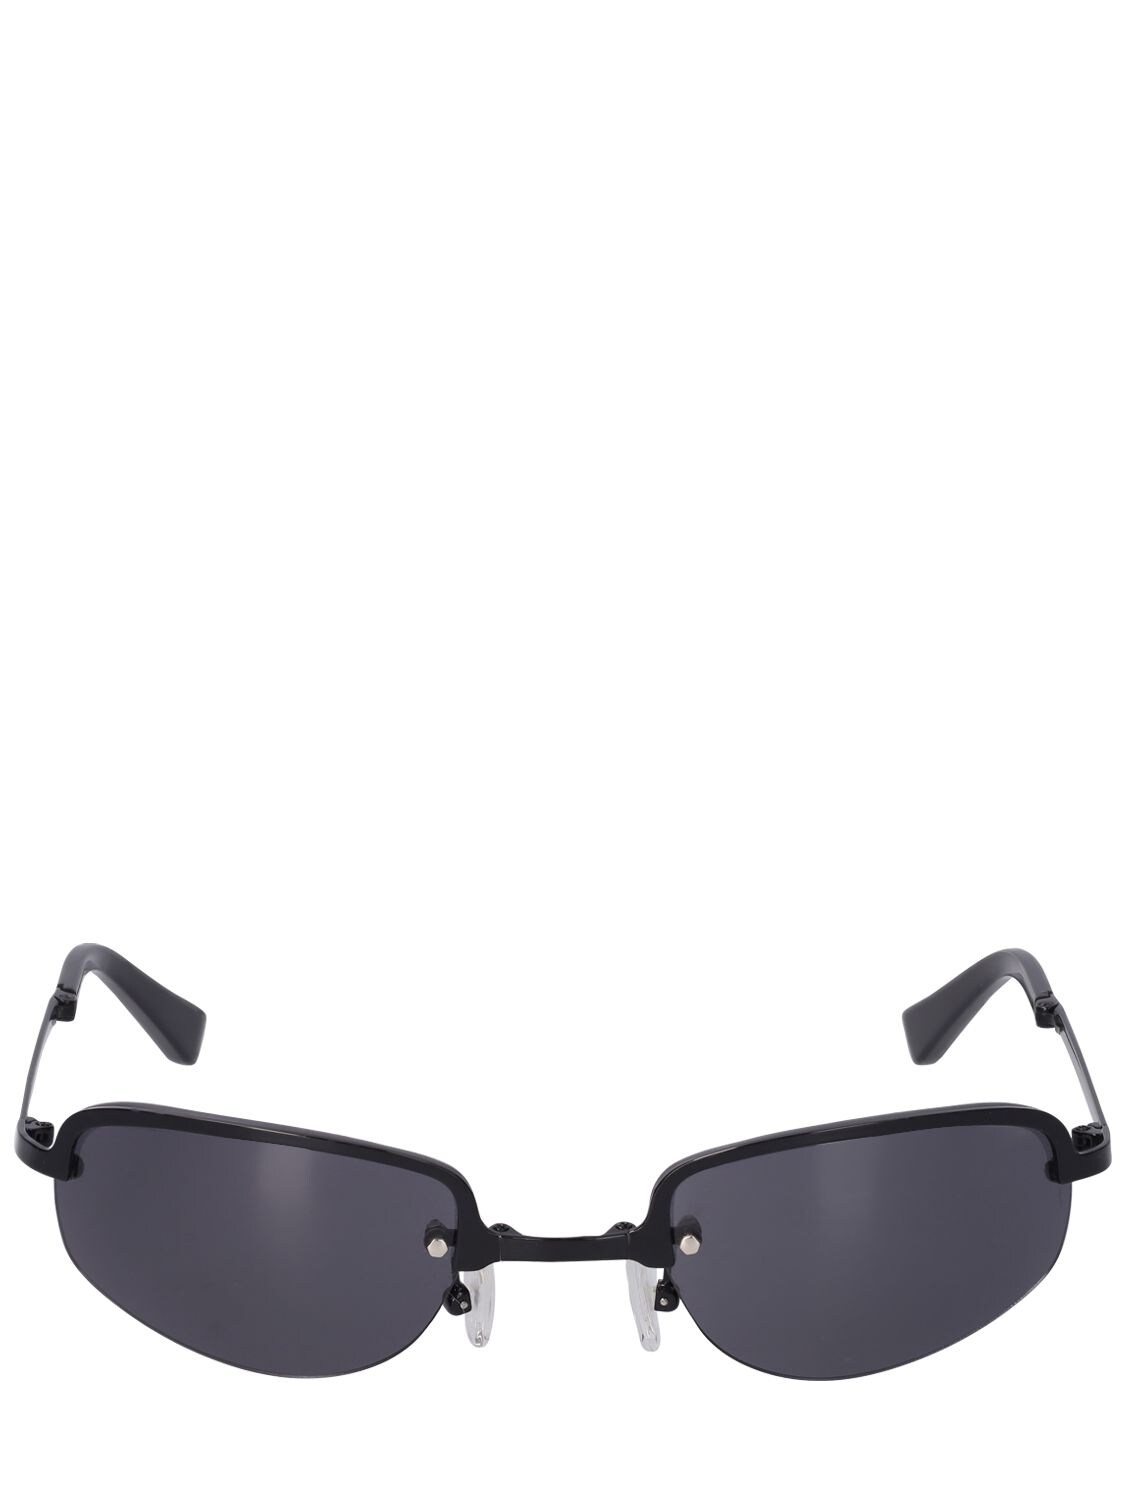 Siron Black Foldable Steel Sunglasses - A BETTER FEELING - Modalova